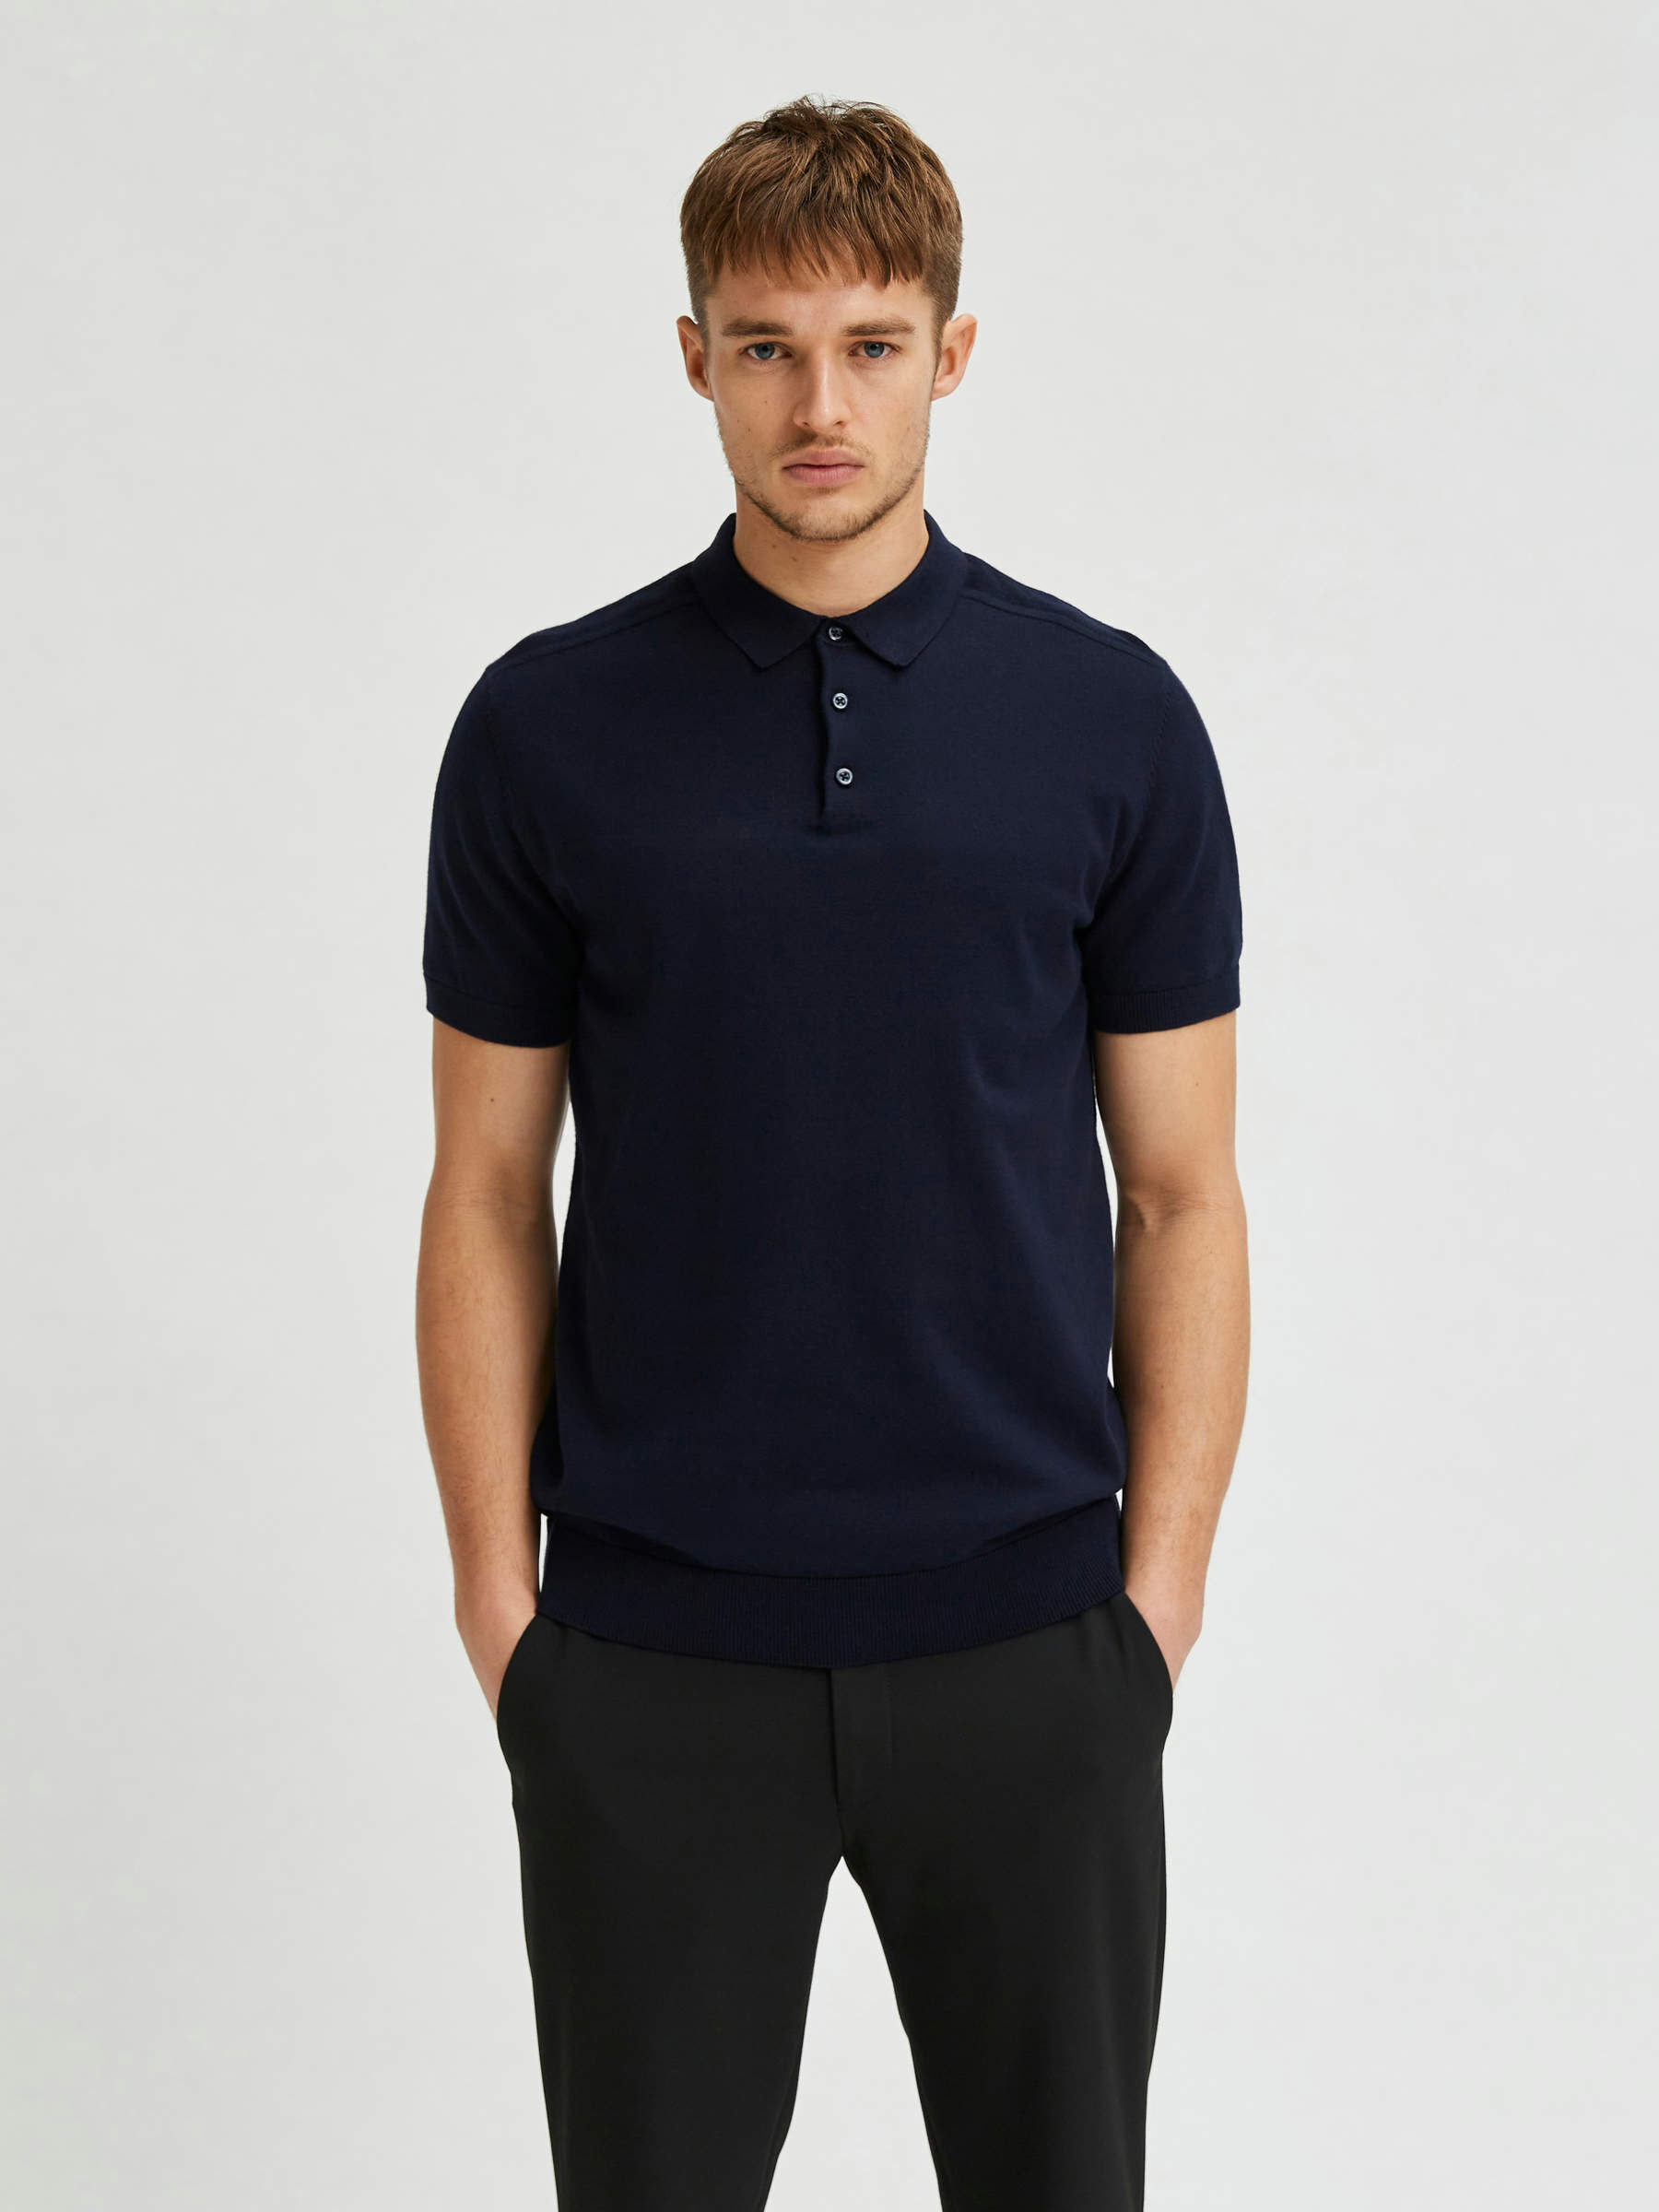 navy blue polo shirt